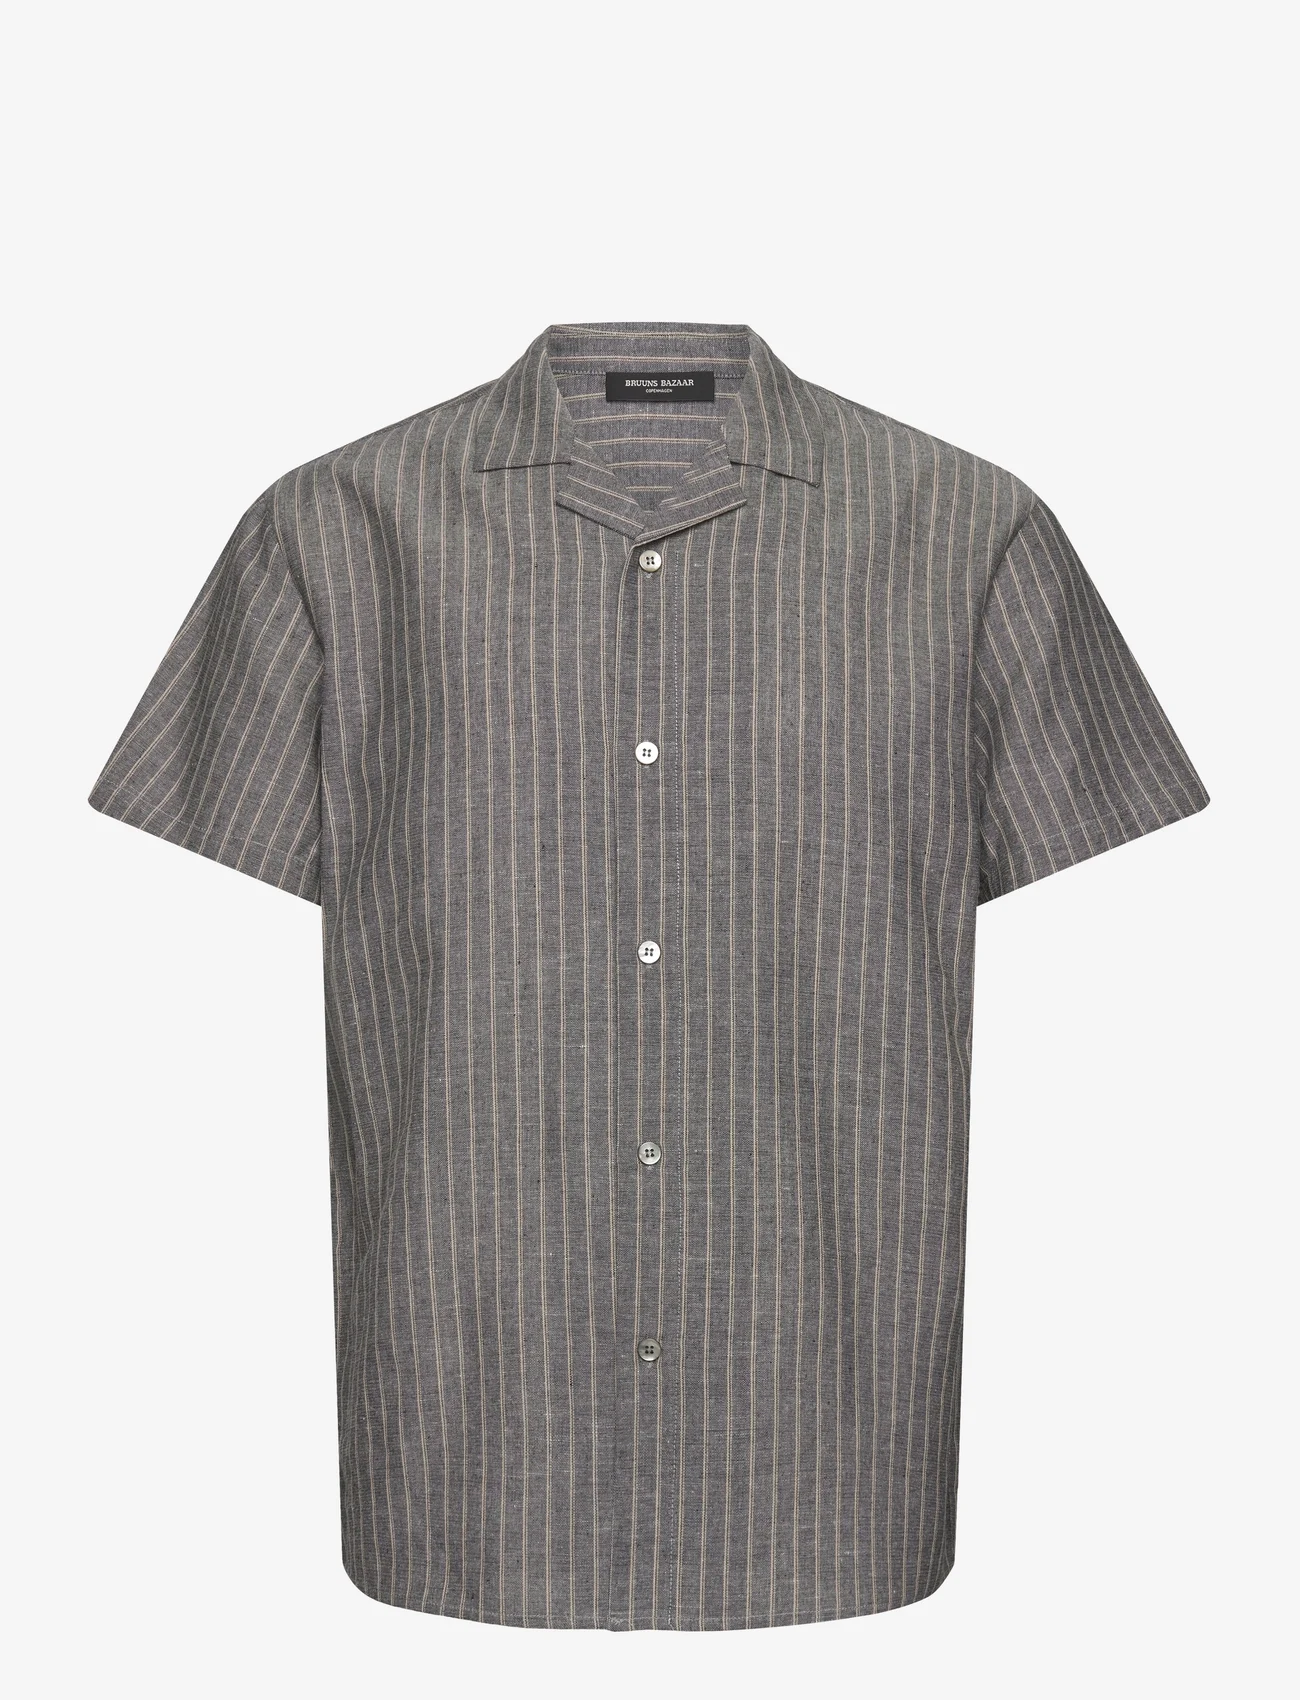 Bruuns Bazaar - StiplinBBHomer shirt - overhemden met korte mouw - stripe - 0